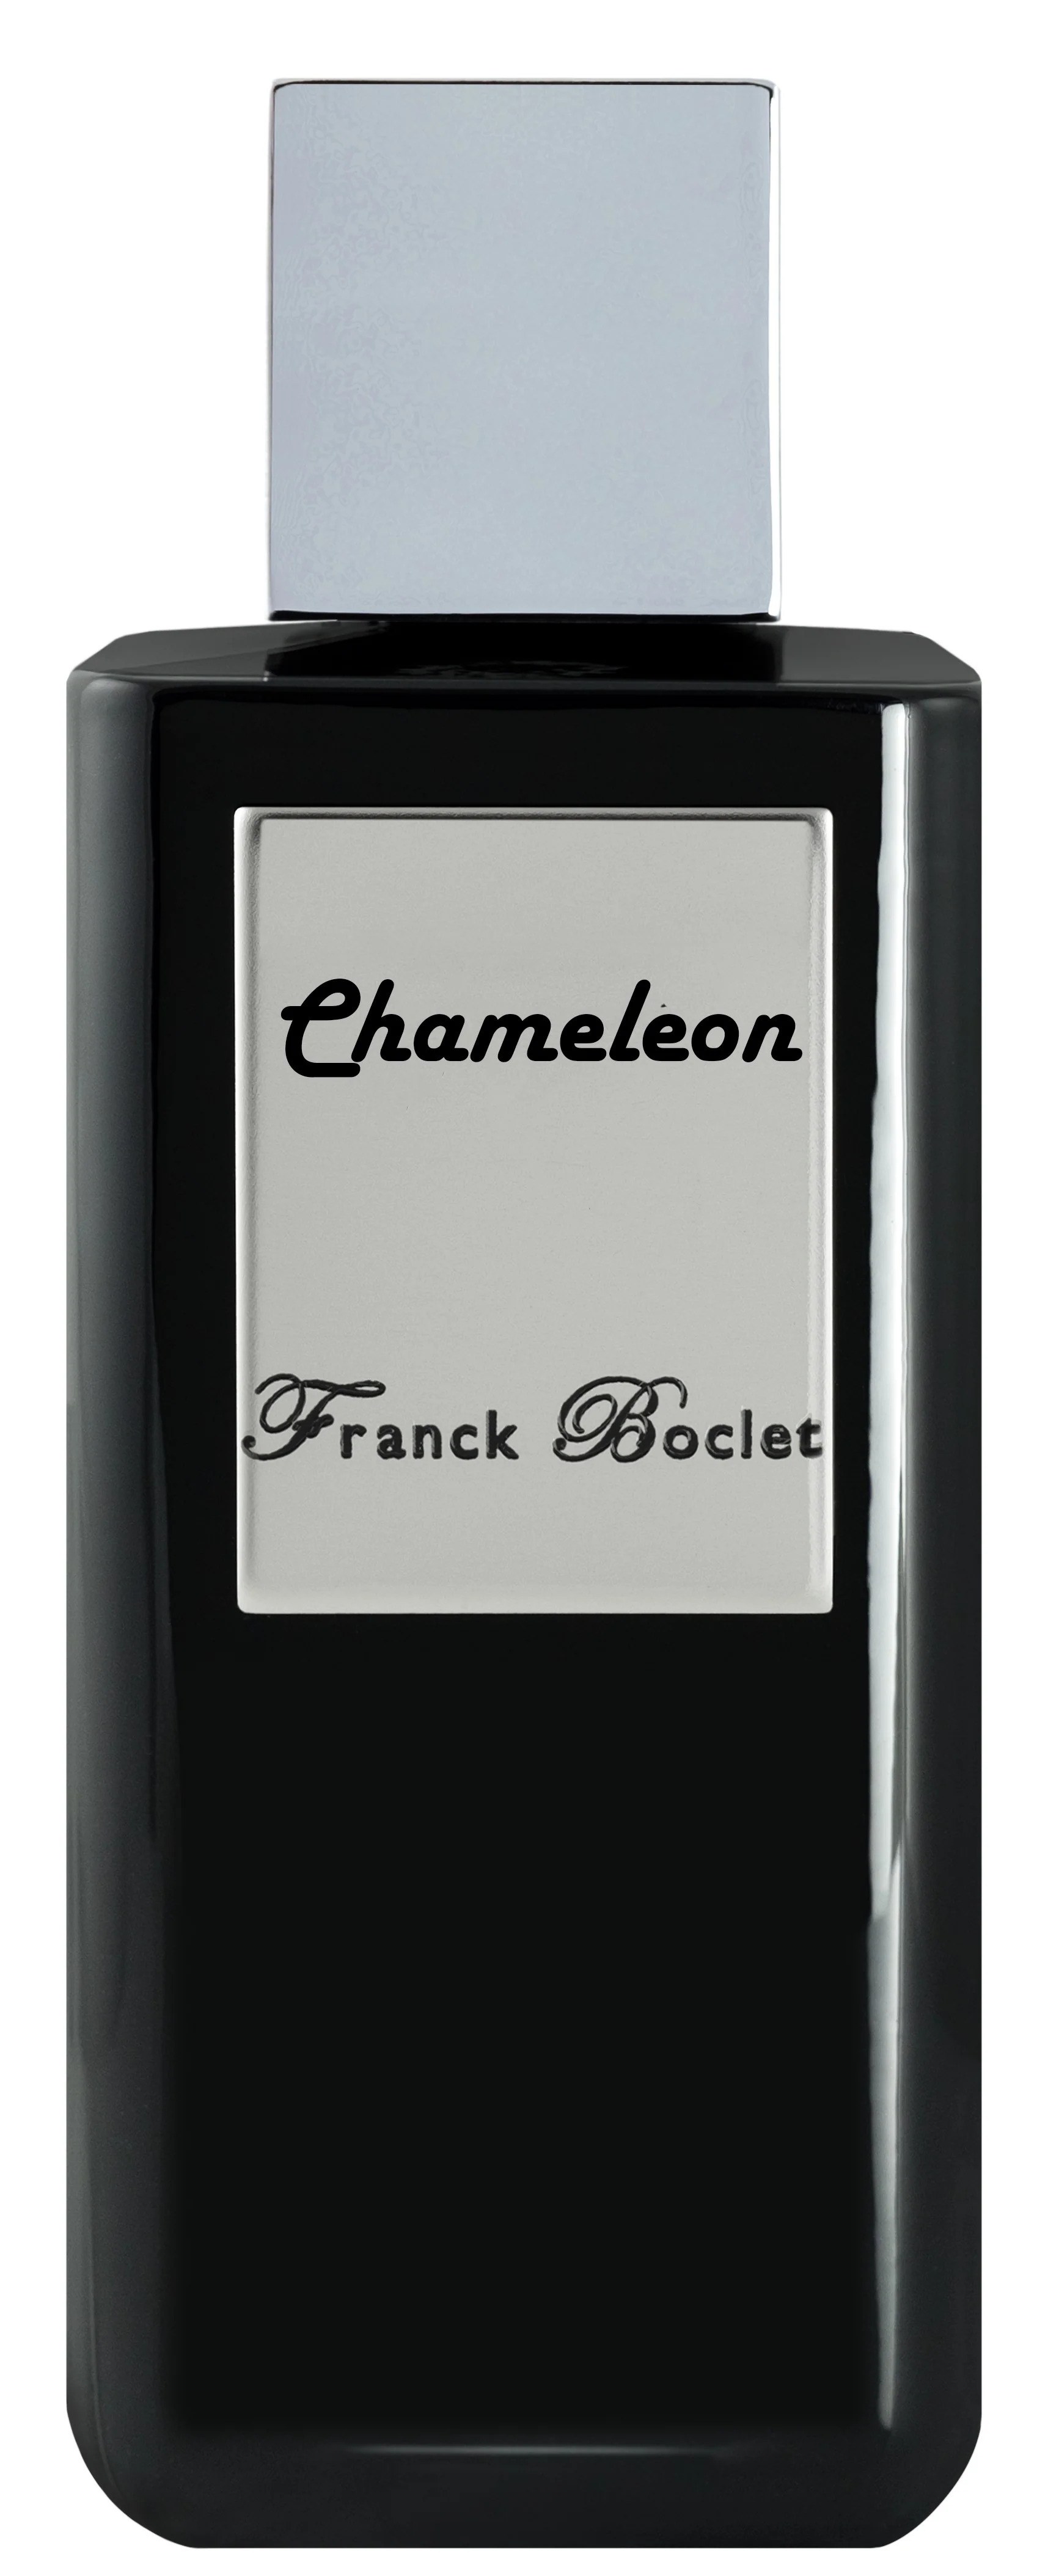 Парфюмерная вода Franck Boclet Chameleon, 100 мл франция изнутри как на самом деле живут в стране изысканной кухни и высокой моды